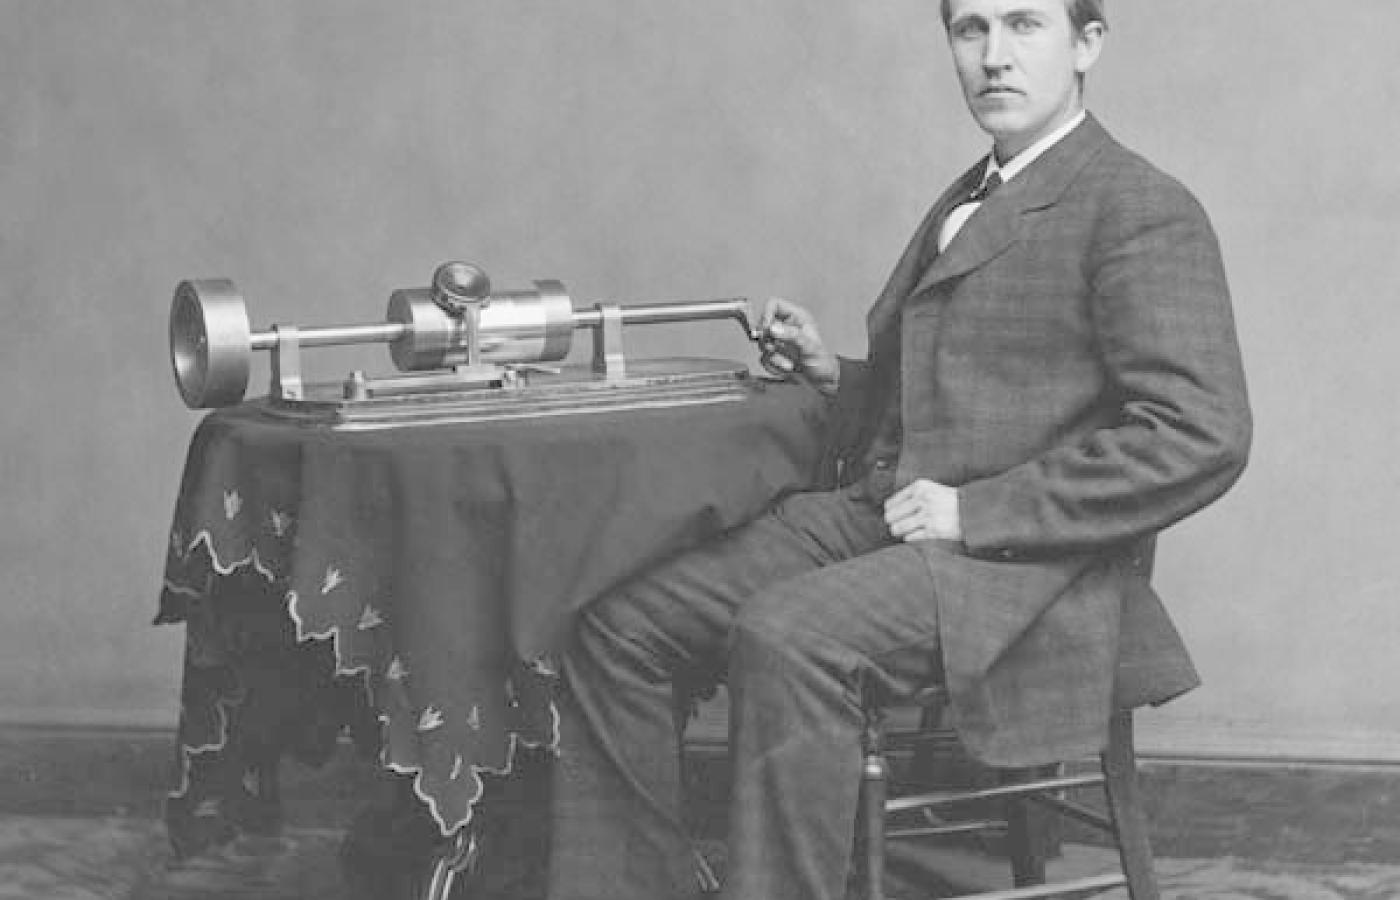 Wspaniały chłopak ze swoją wspaniałą maszyną: Thomas Edison i wczesna wersja fonografu. Fot. Wiki